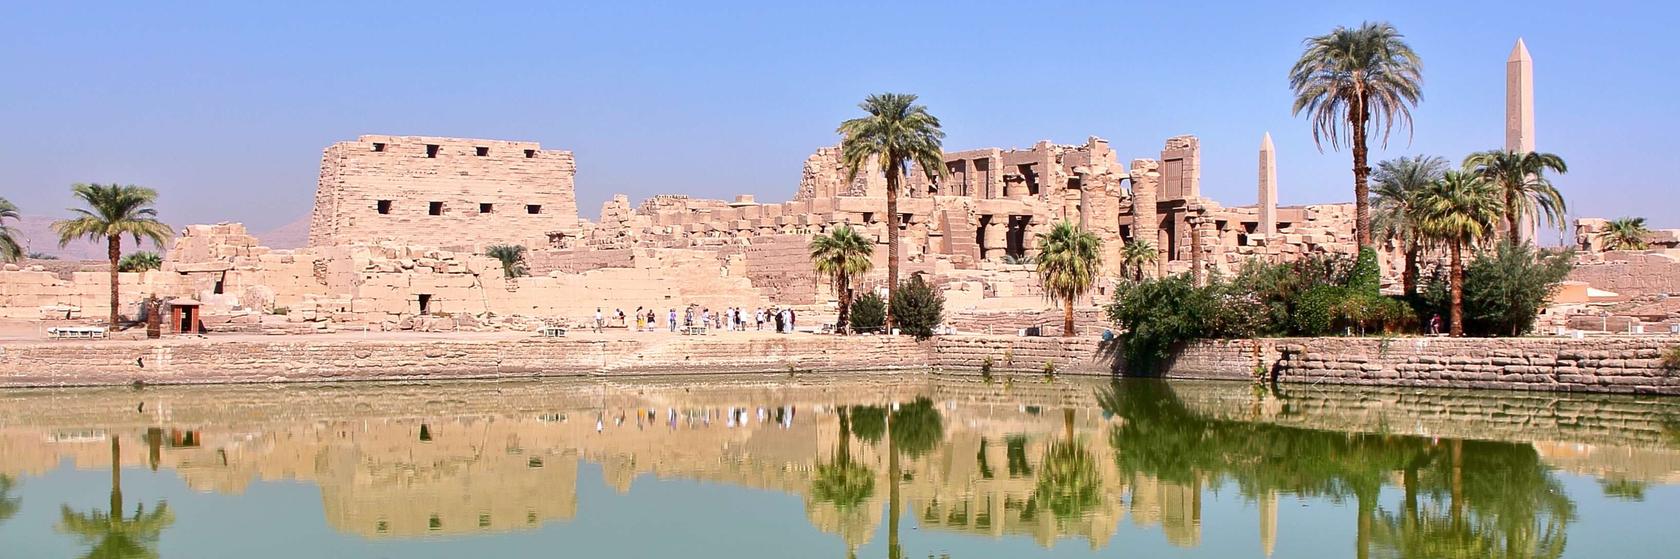 Tipy na výlety od Luxoru přes Lybijskou poušť až po Asuán